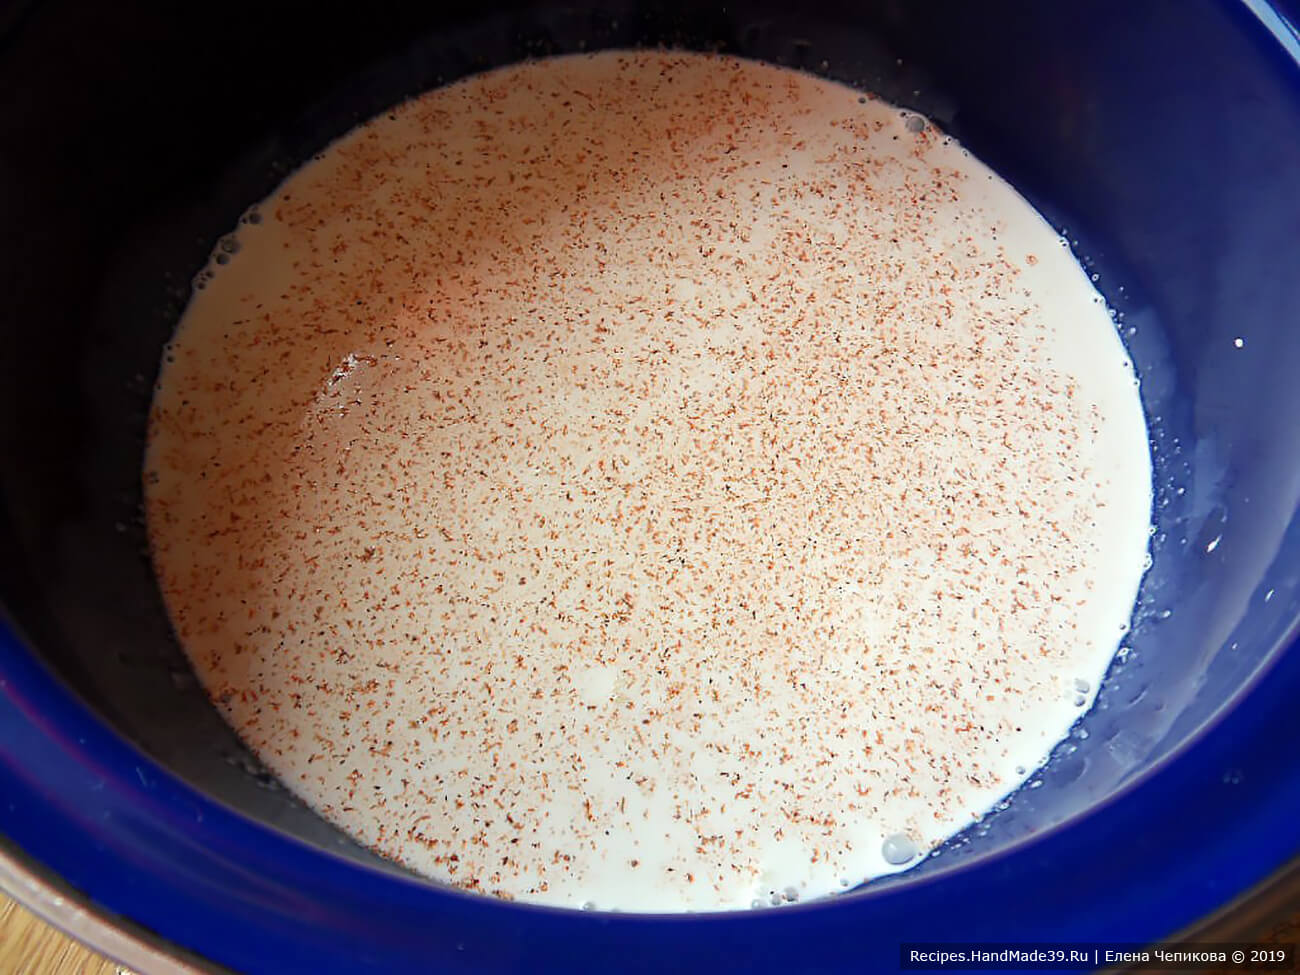 В кастрюле нагреть нежирные сливки, добавить соль и молотый сладкий перец